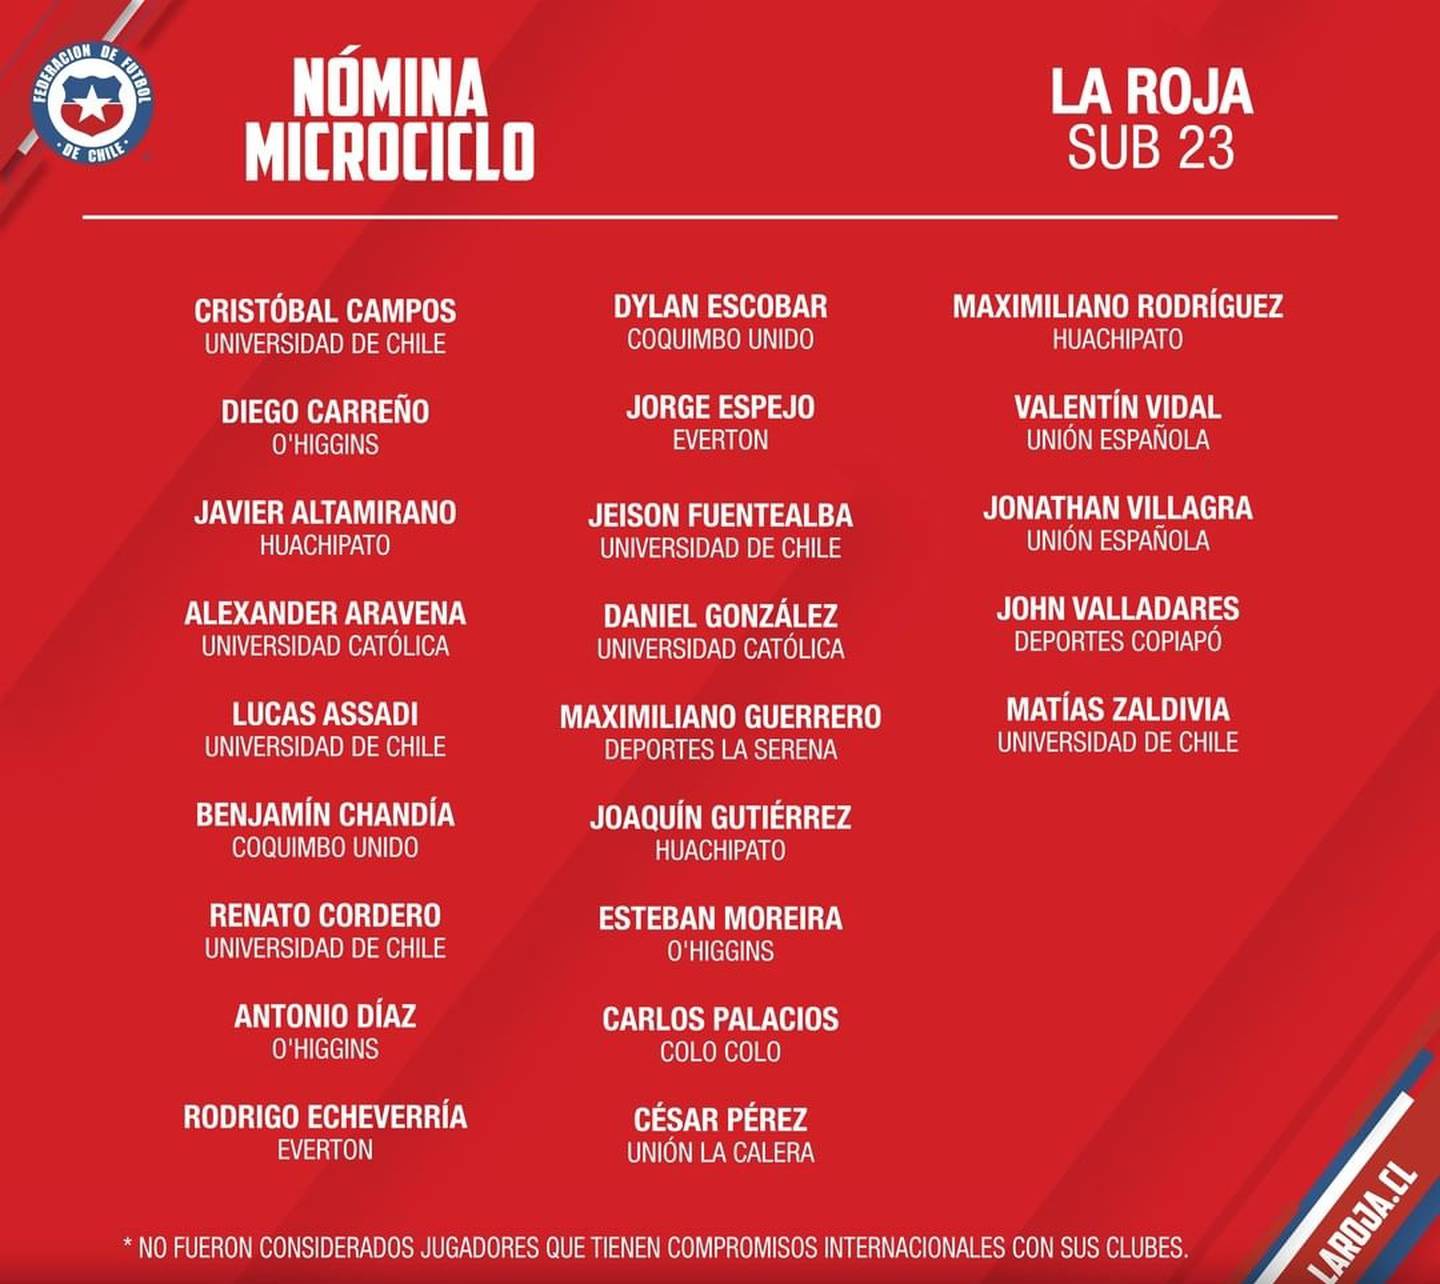 La lista de jugadores de La Roja sub-23 para un nuevo microciclo.